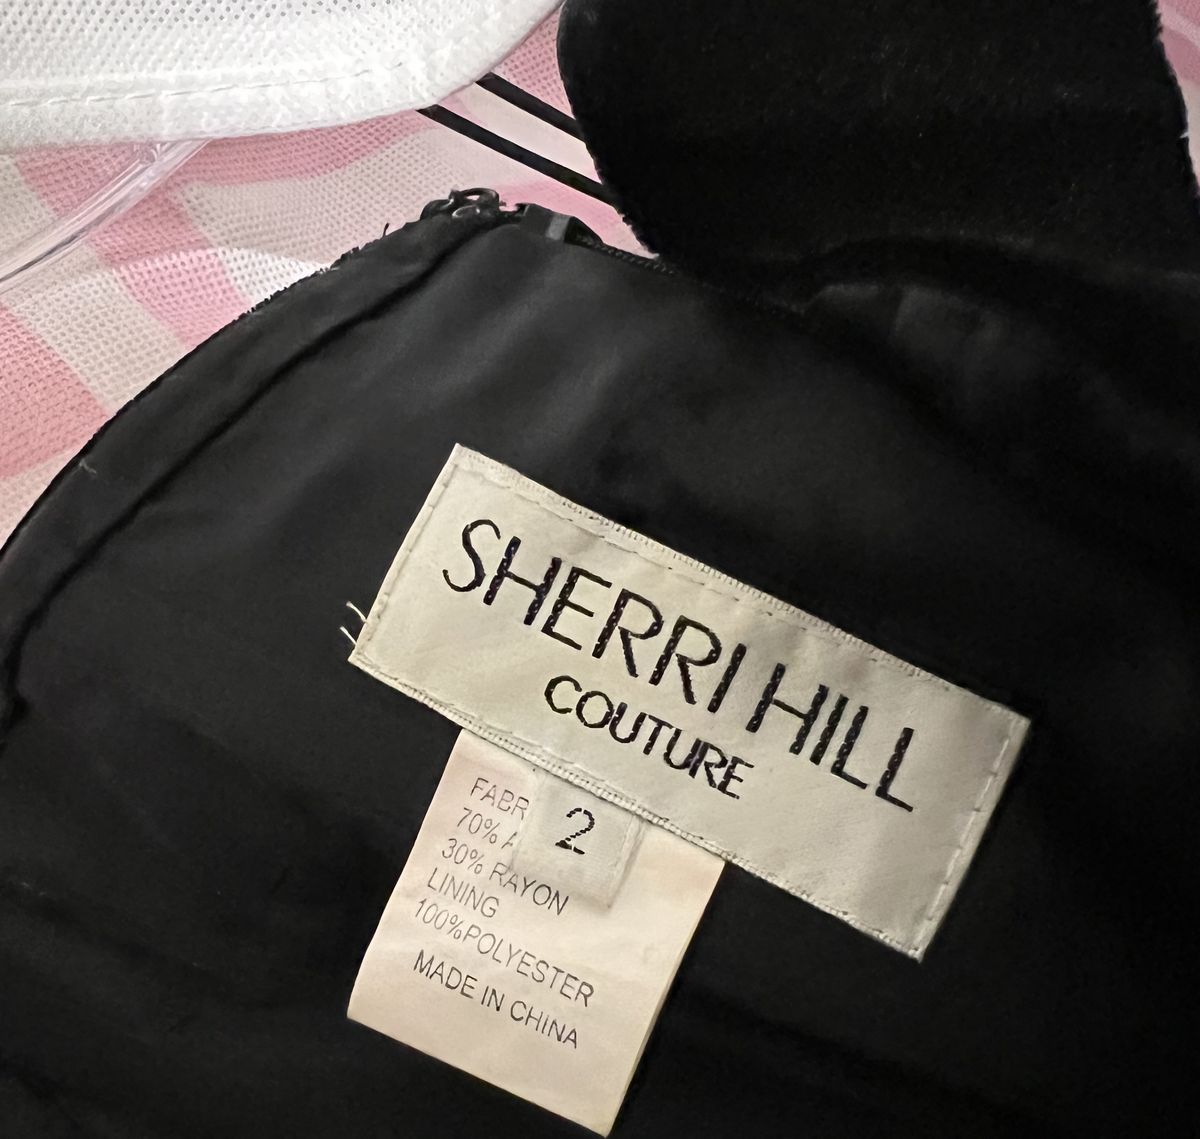 Sherri Hill Size 2 Prom Off The Shoulder Velvet Black Side Slit Dress on Queenly